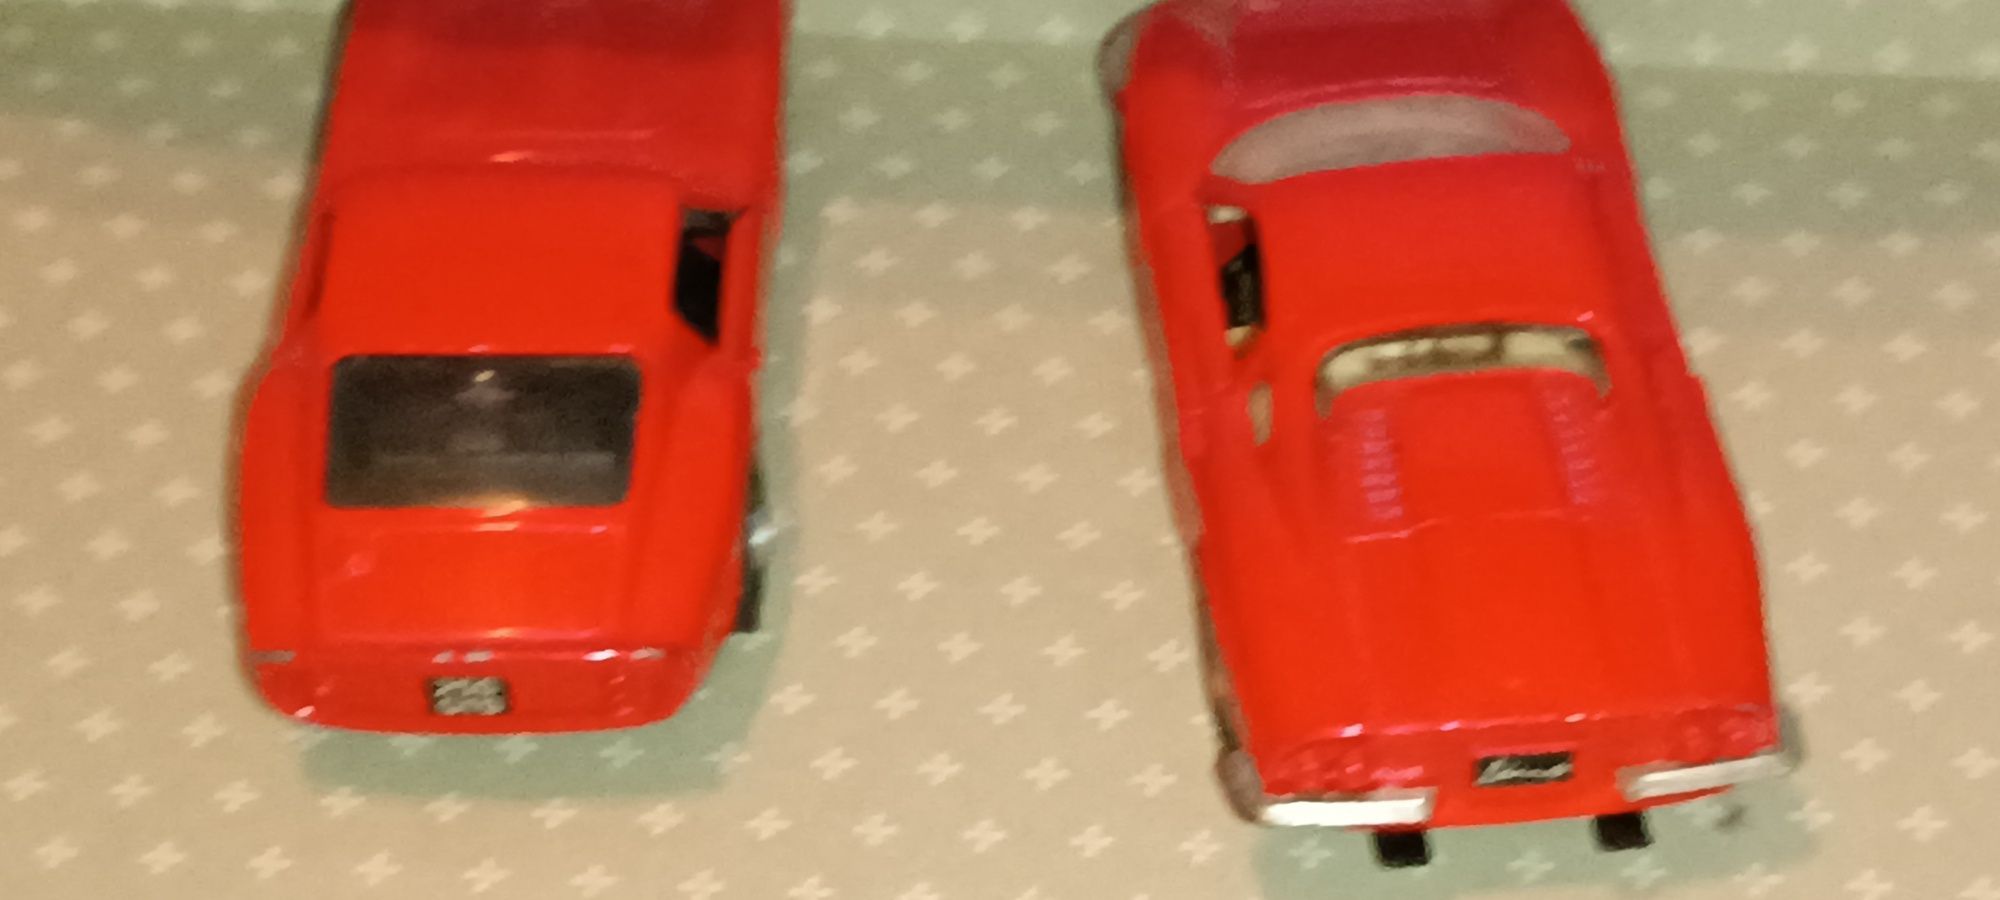 2 antigos carros Ferrari escala 1:43